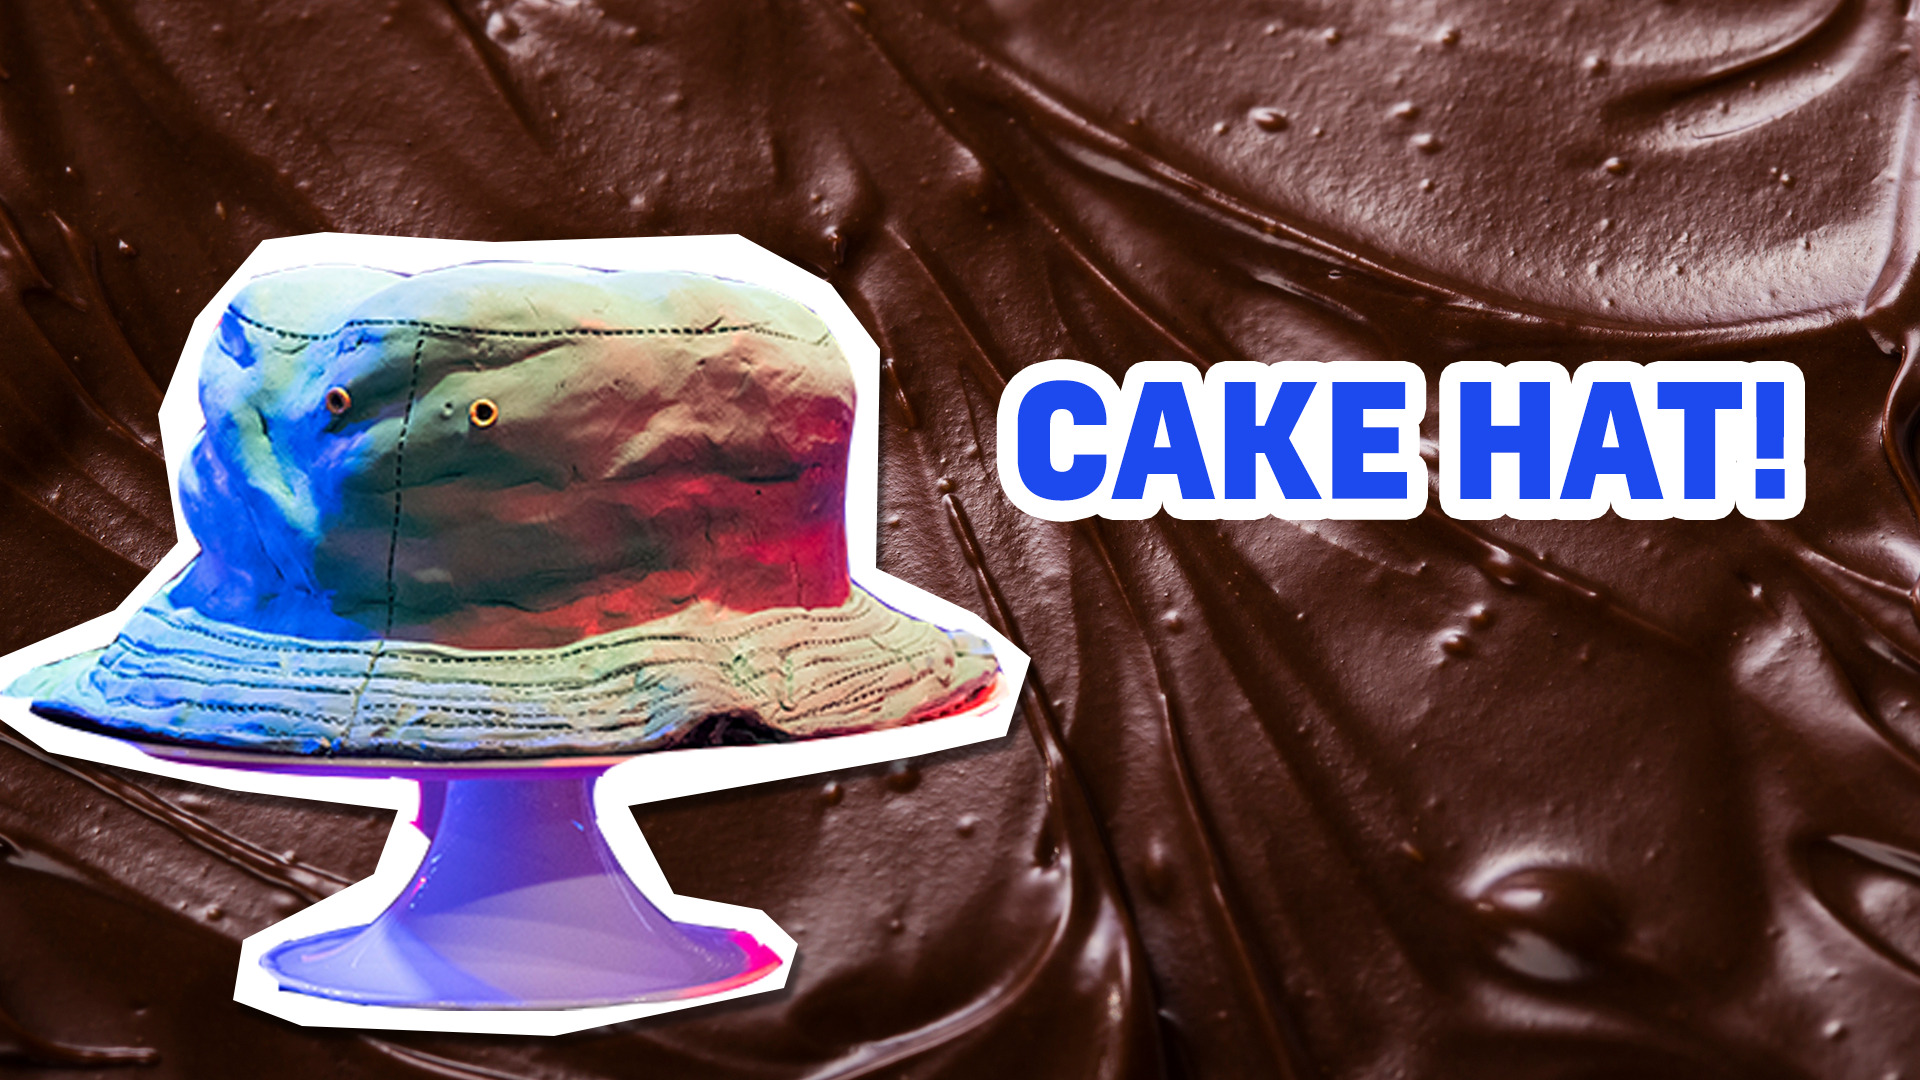 Cake hat result